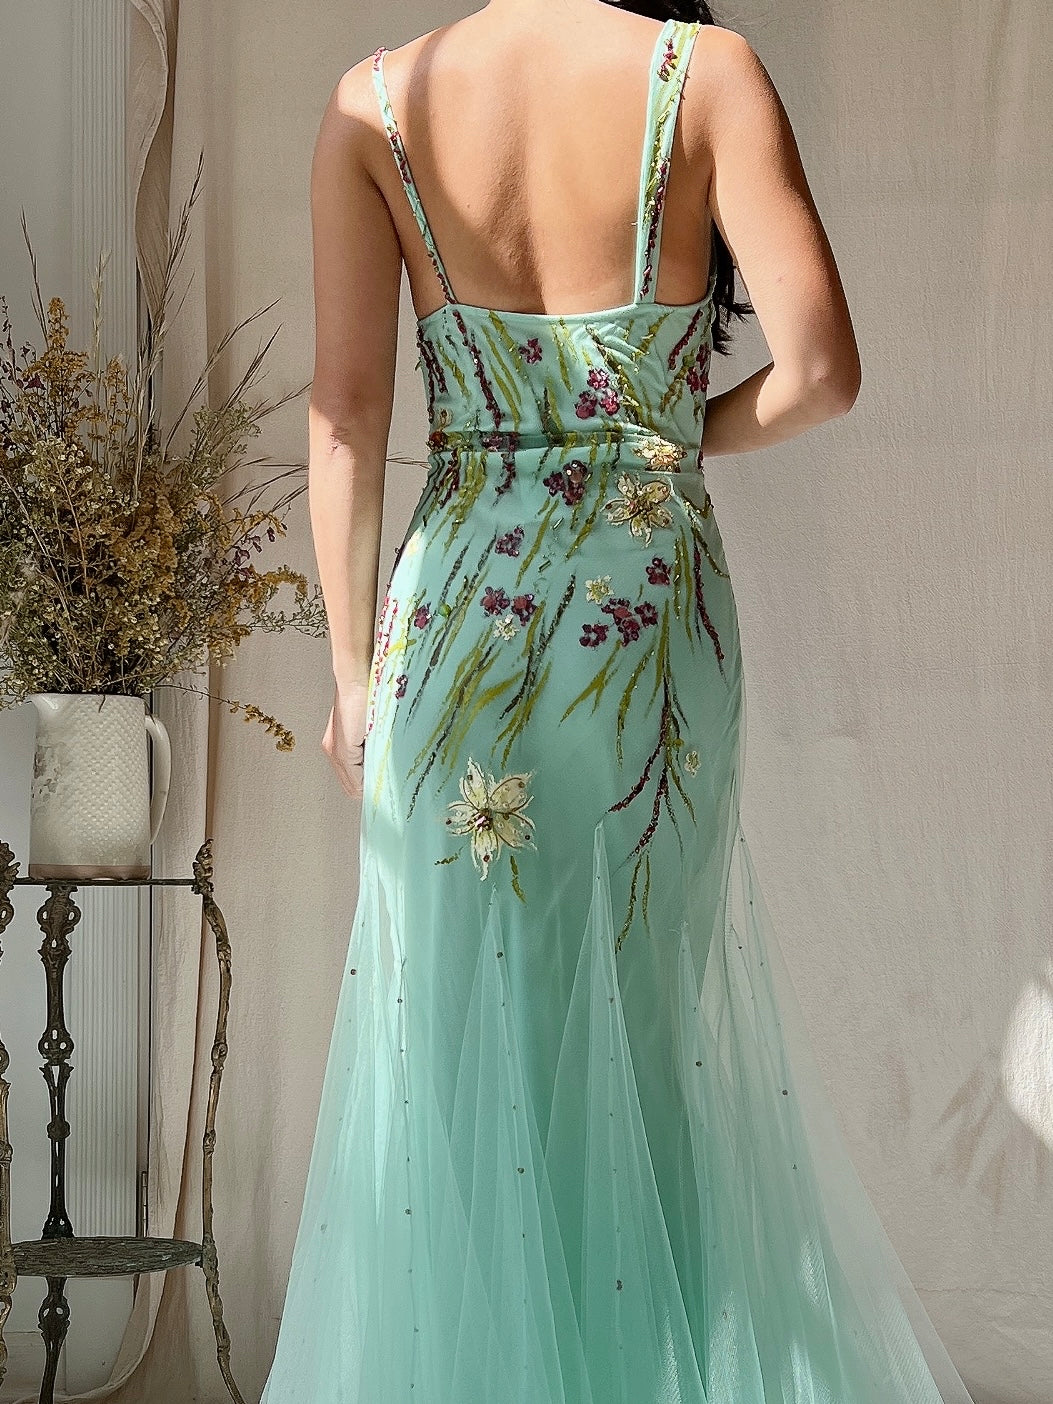 Vintage Alberto Makali Painted Tulle Dress - S